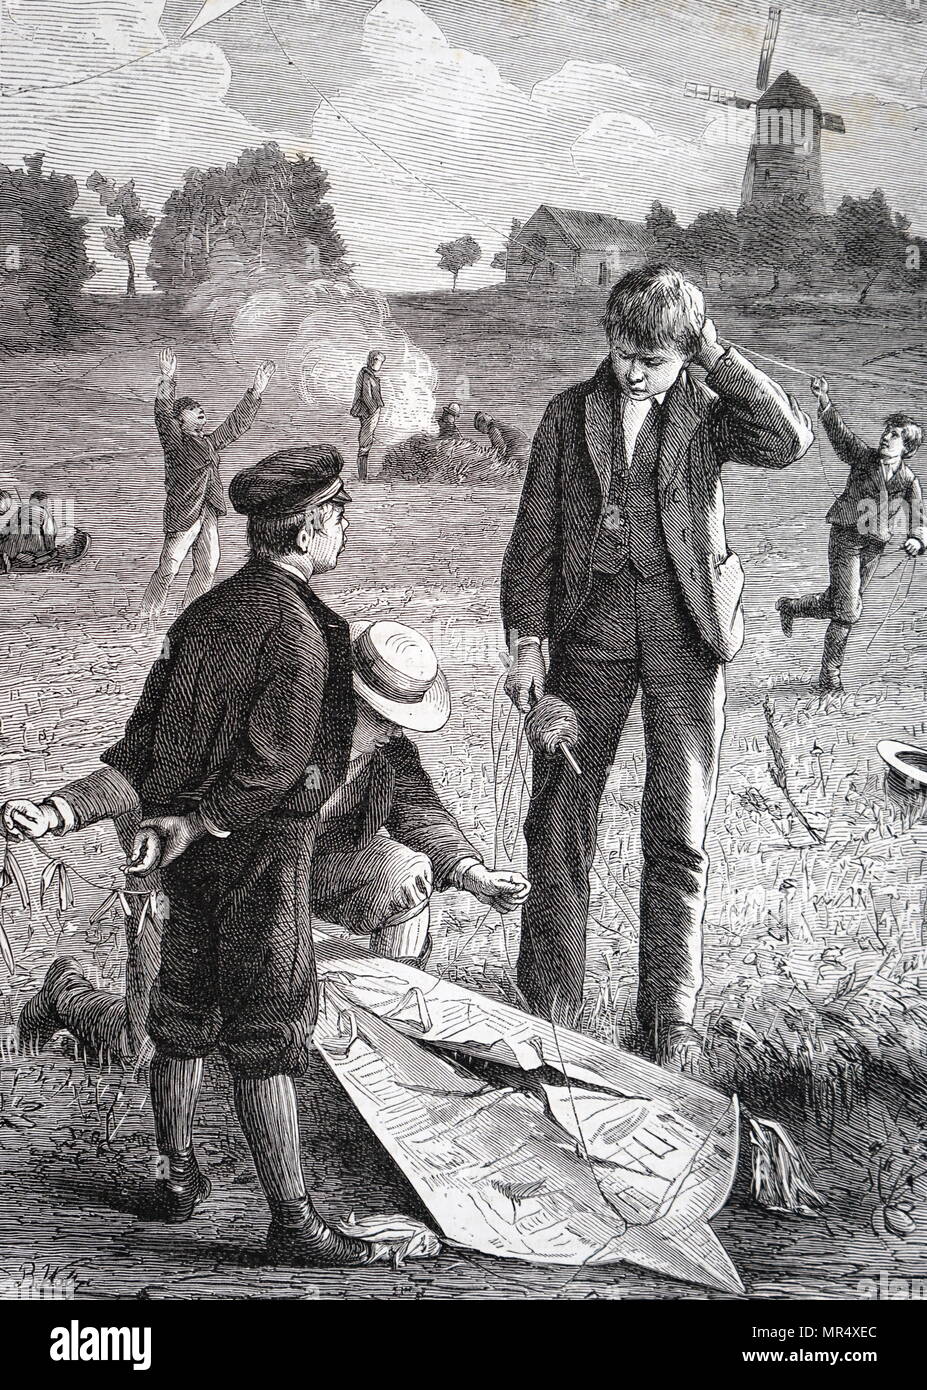 Abbildung: Darstellung von Jungen mit einem beschädigten Kite. Vom 19. Jahrhundert Stockfoto